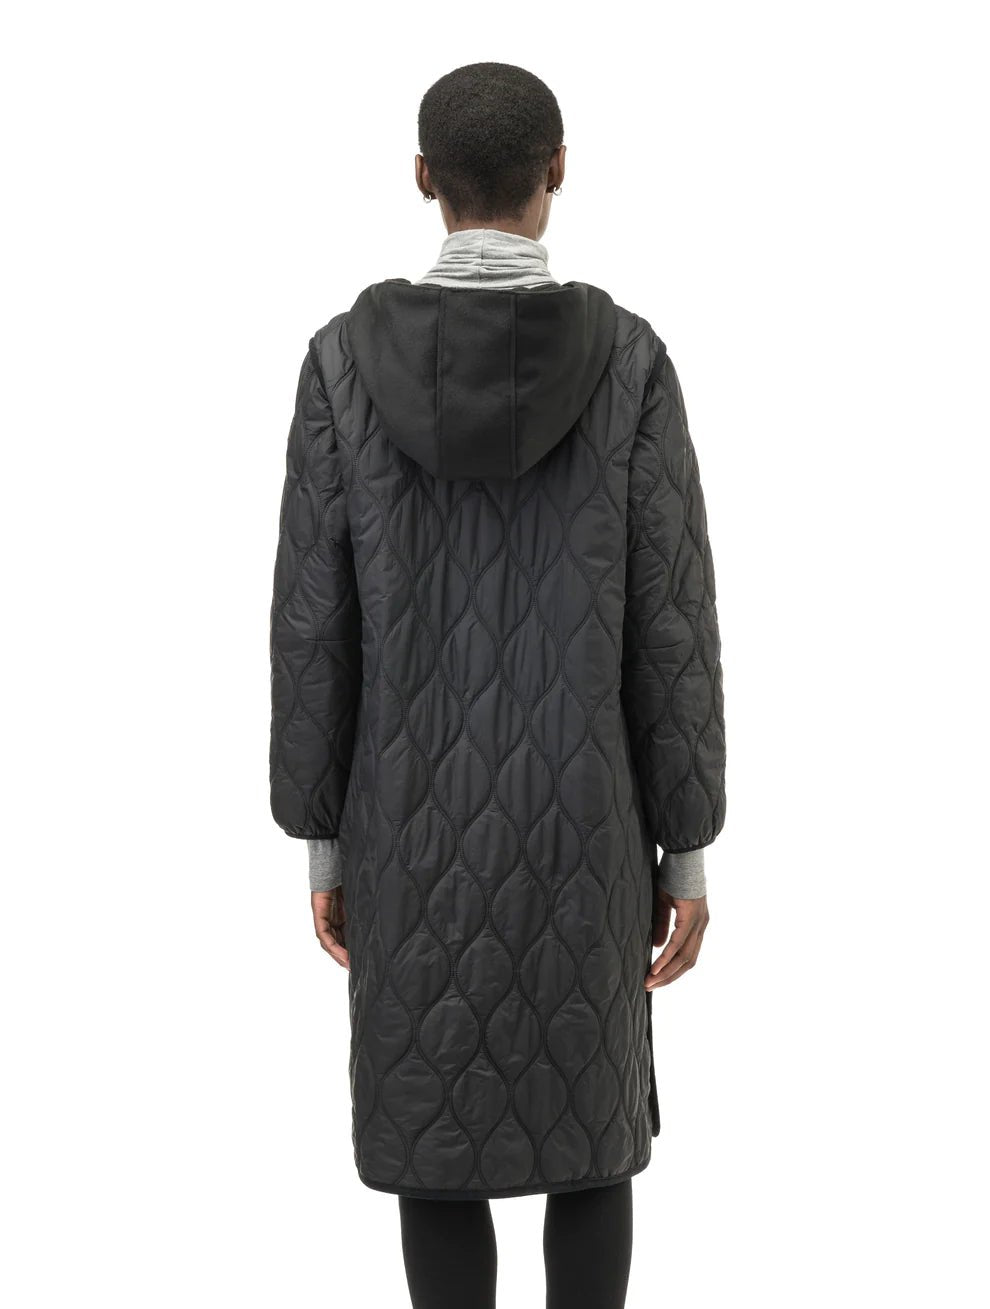 NOBIS SURI LEGACY - Women's Long Quilted Jacket - FINAL SALE - Boutique Bubbles